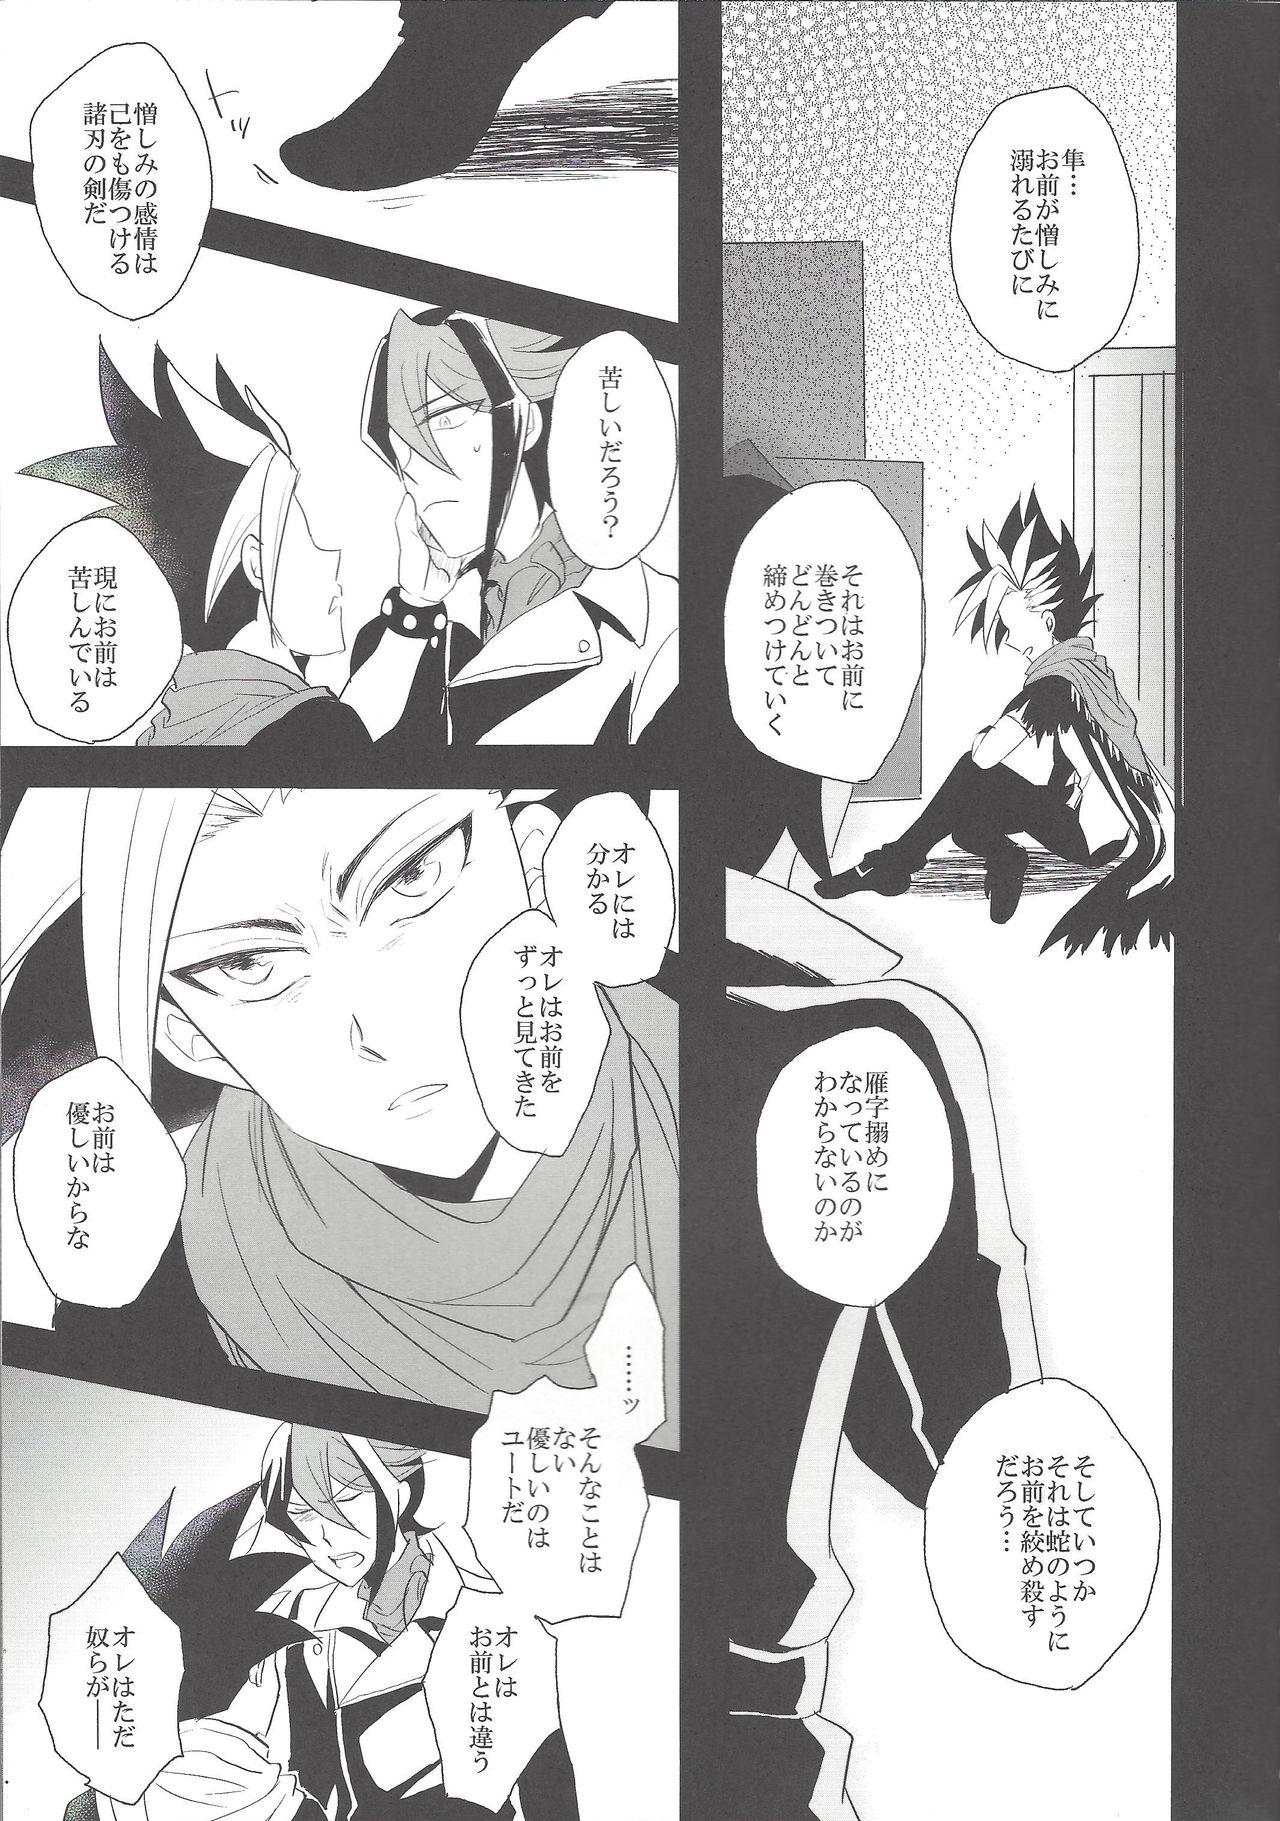 Babes Hebi no Doku, shitatari ochiru wa Mitsu no Aji - Yu-gi-oh arc-v Transexual - Page 6